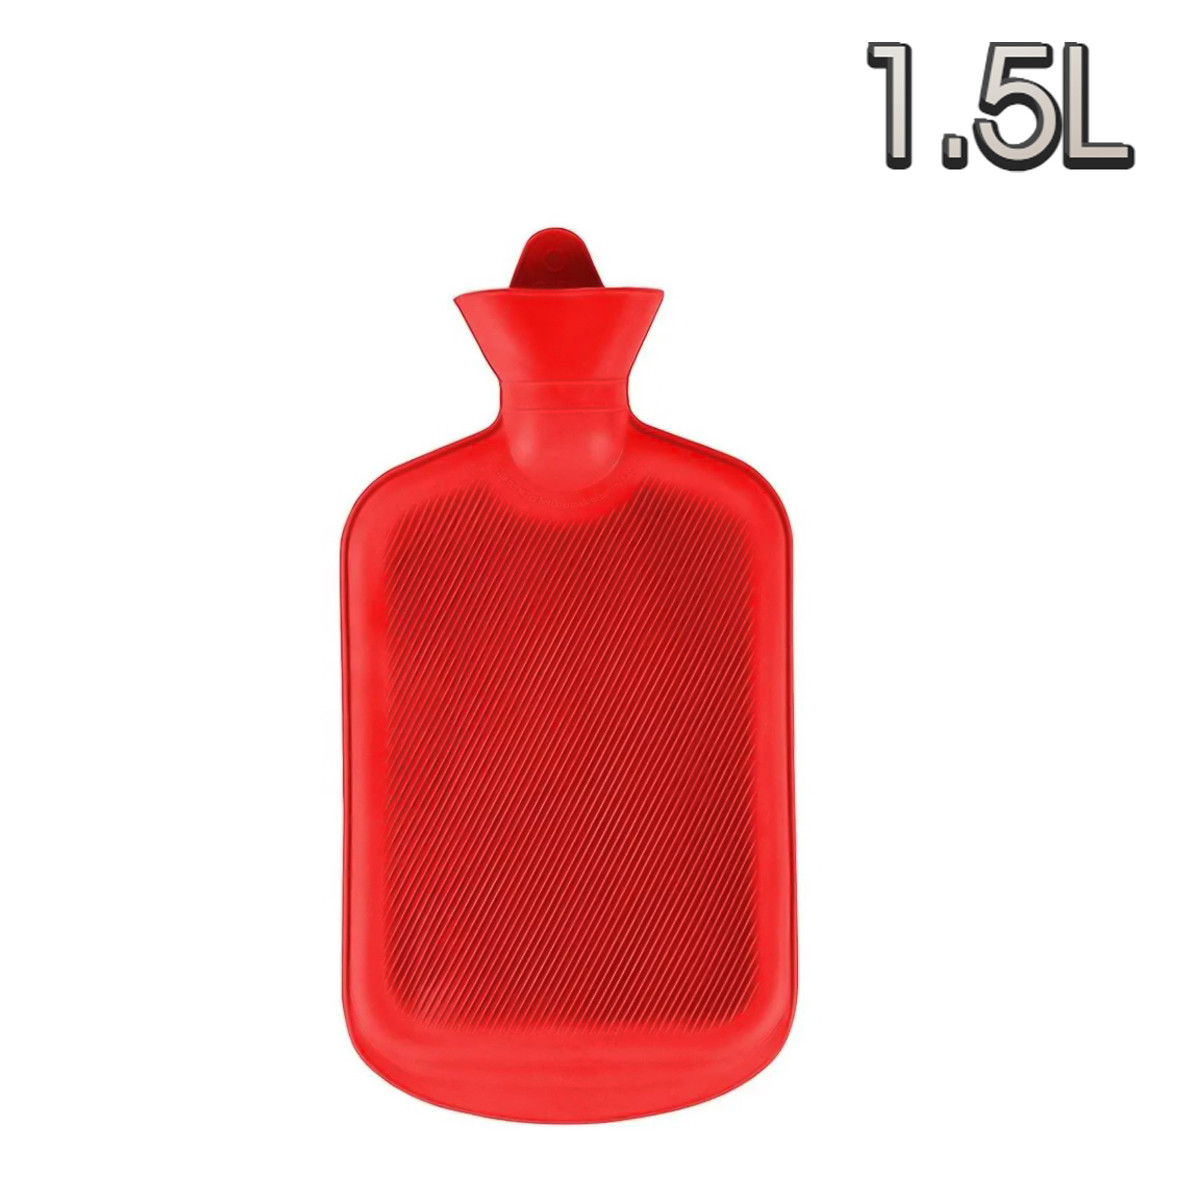 Грілка гумова Червона 1.5Л грілка для рук багаторазова, грілка-подушка водяна для обігріву, фото 1